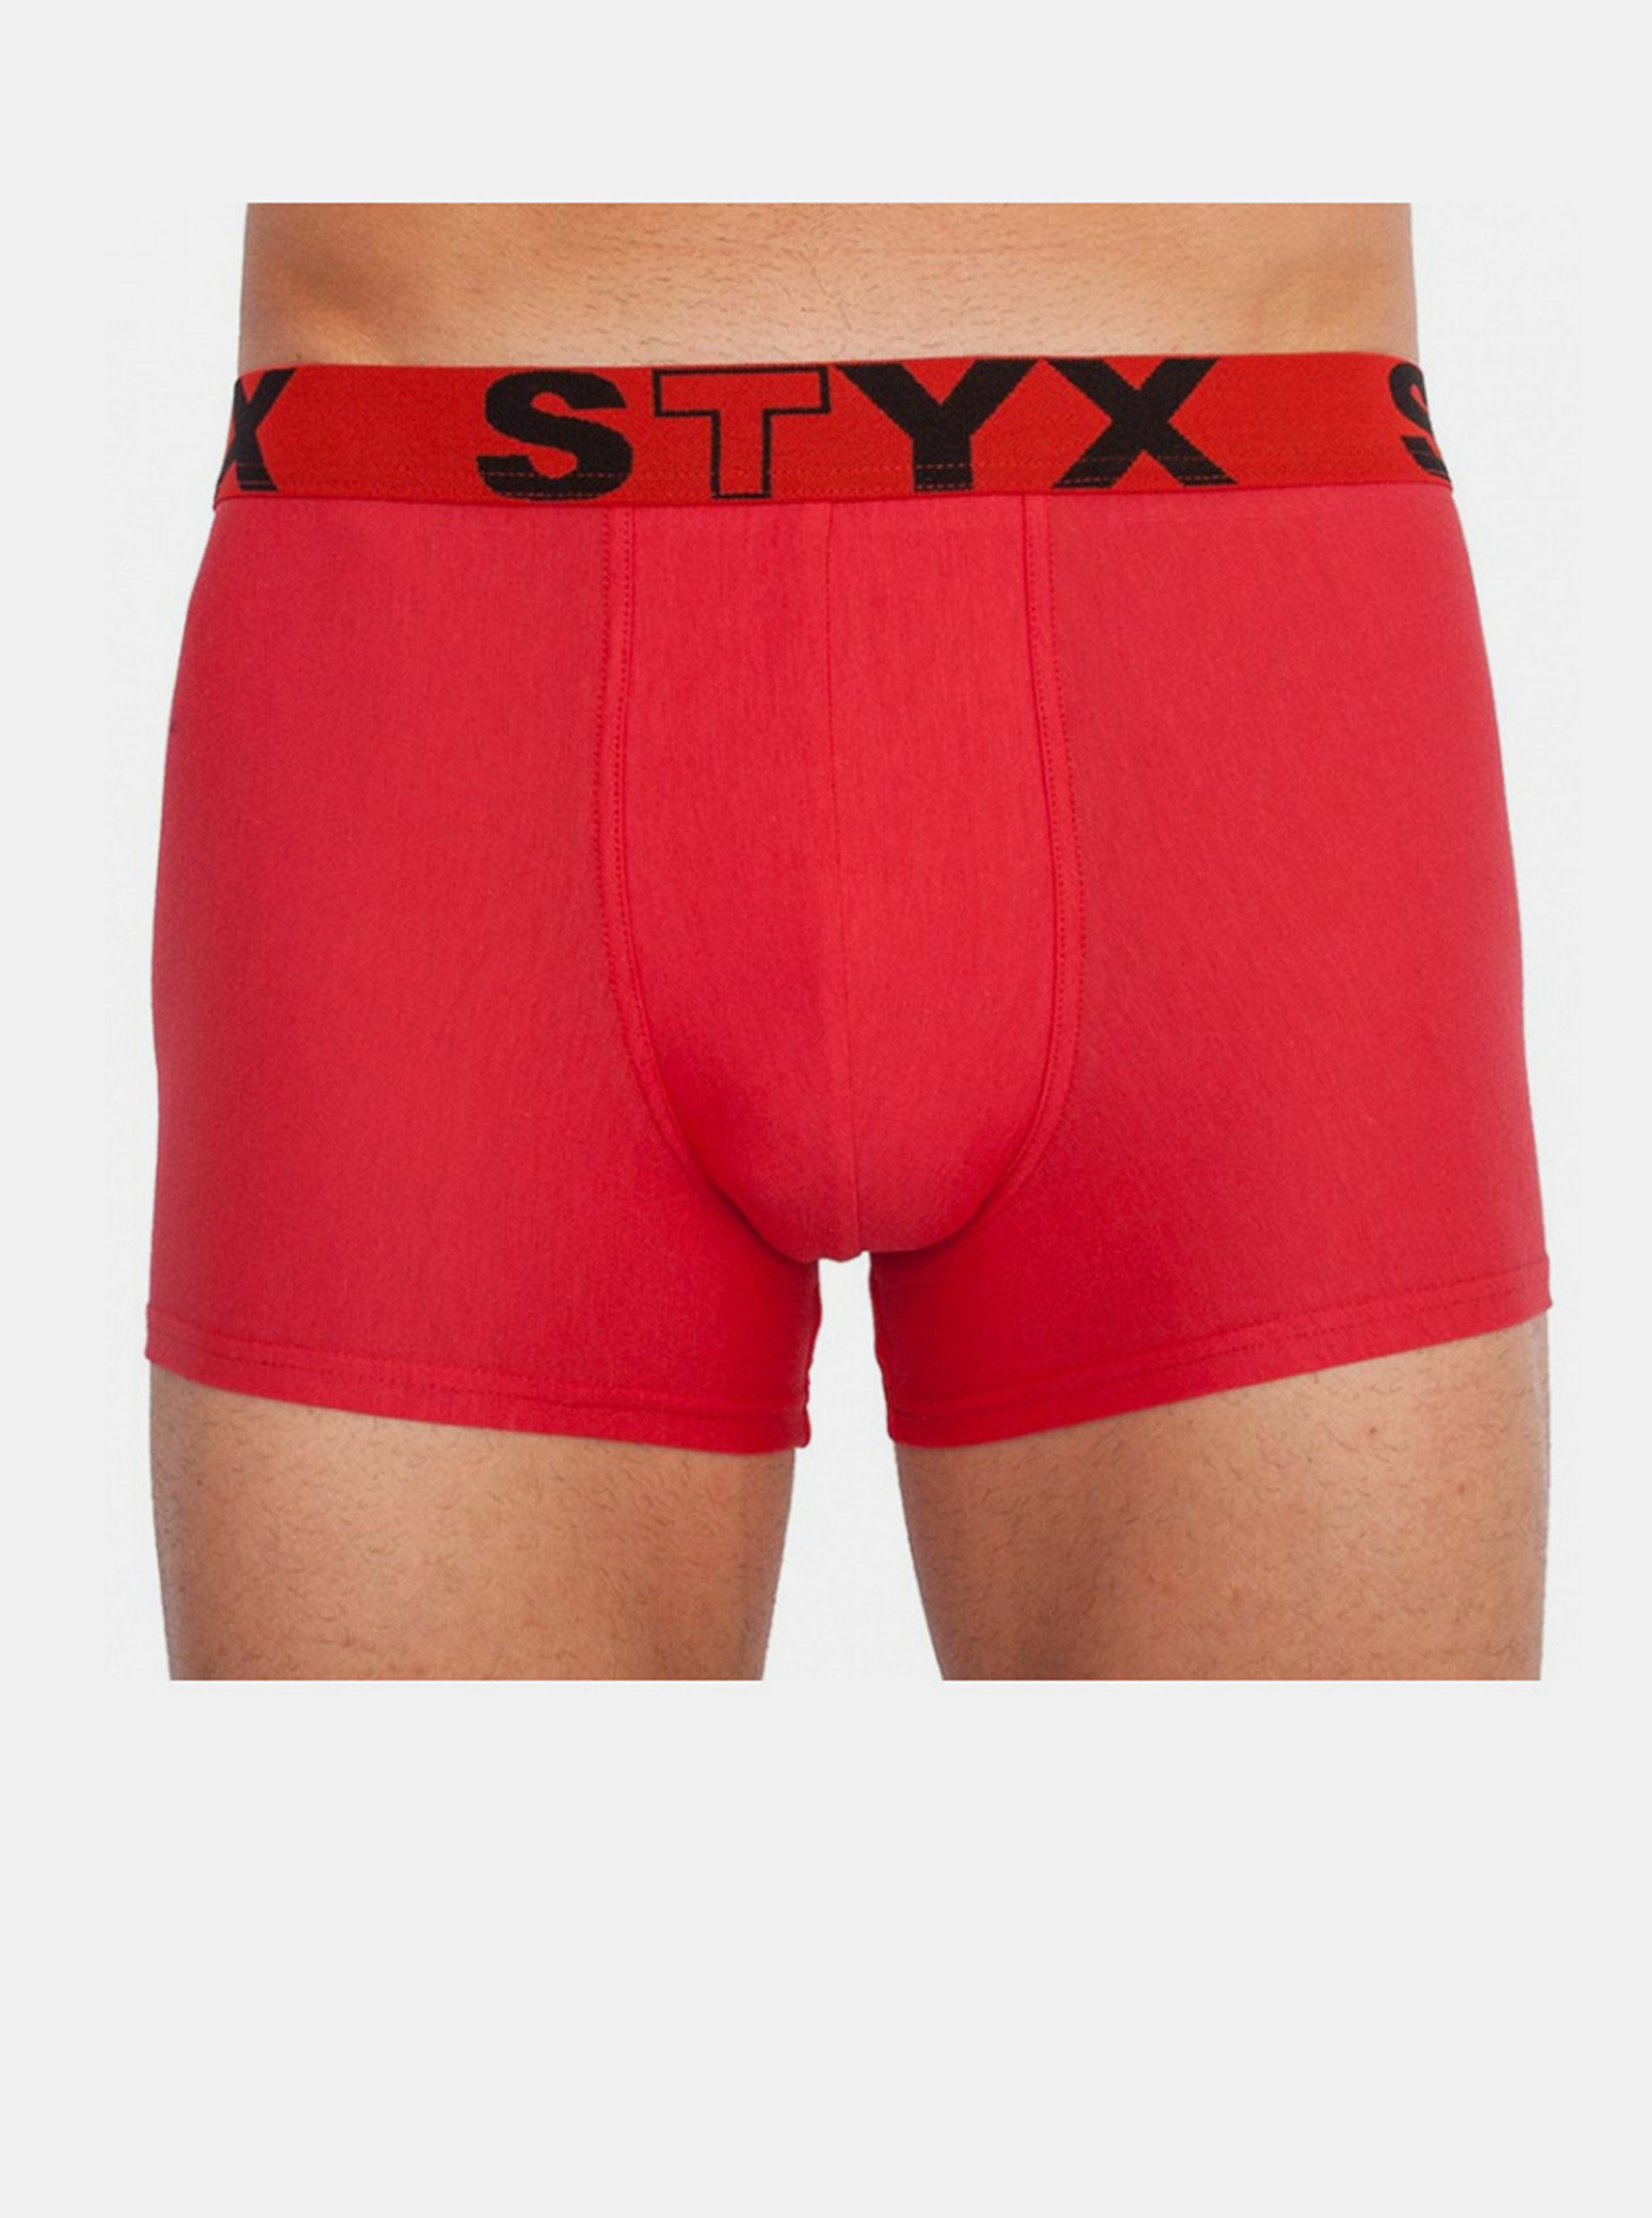 Fotografie Pánské boxerky Styx sportovní guma červené